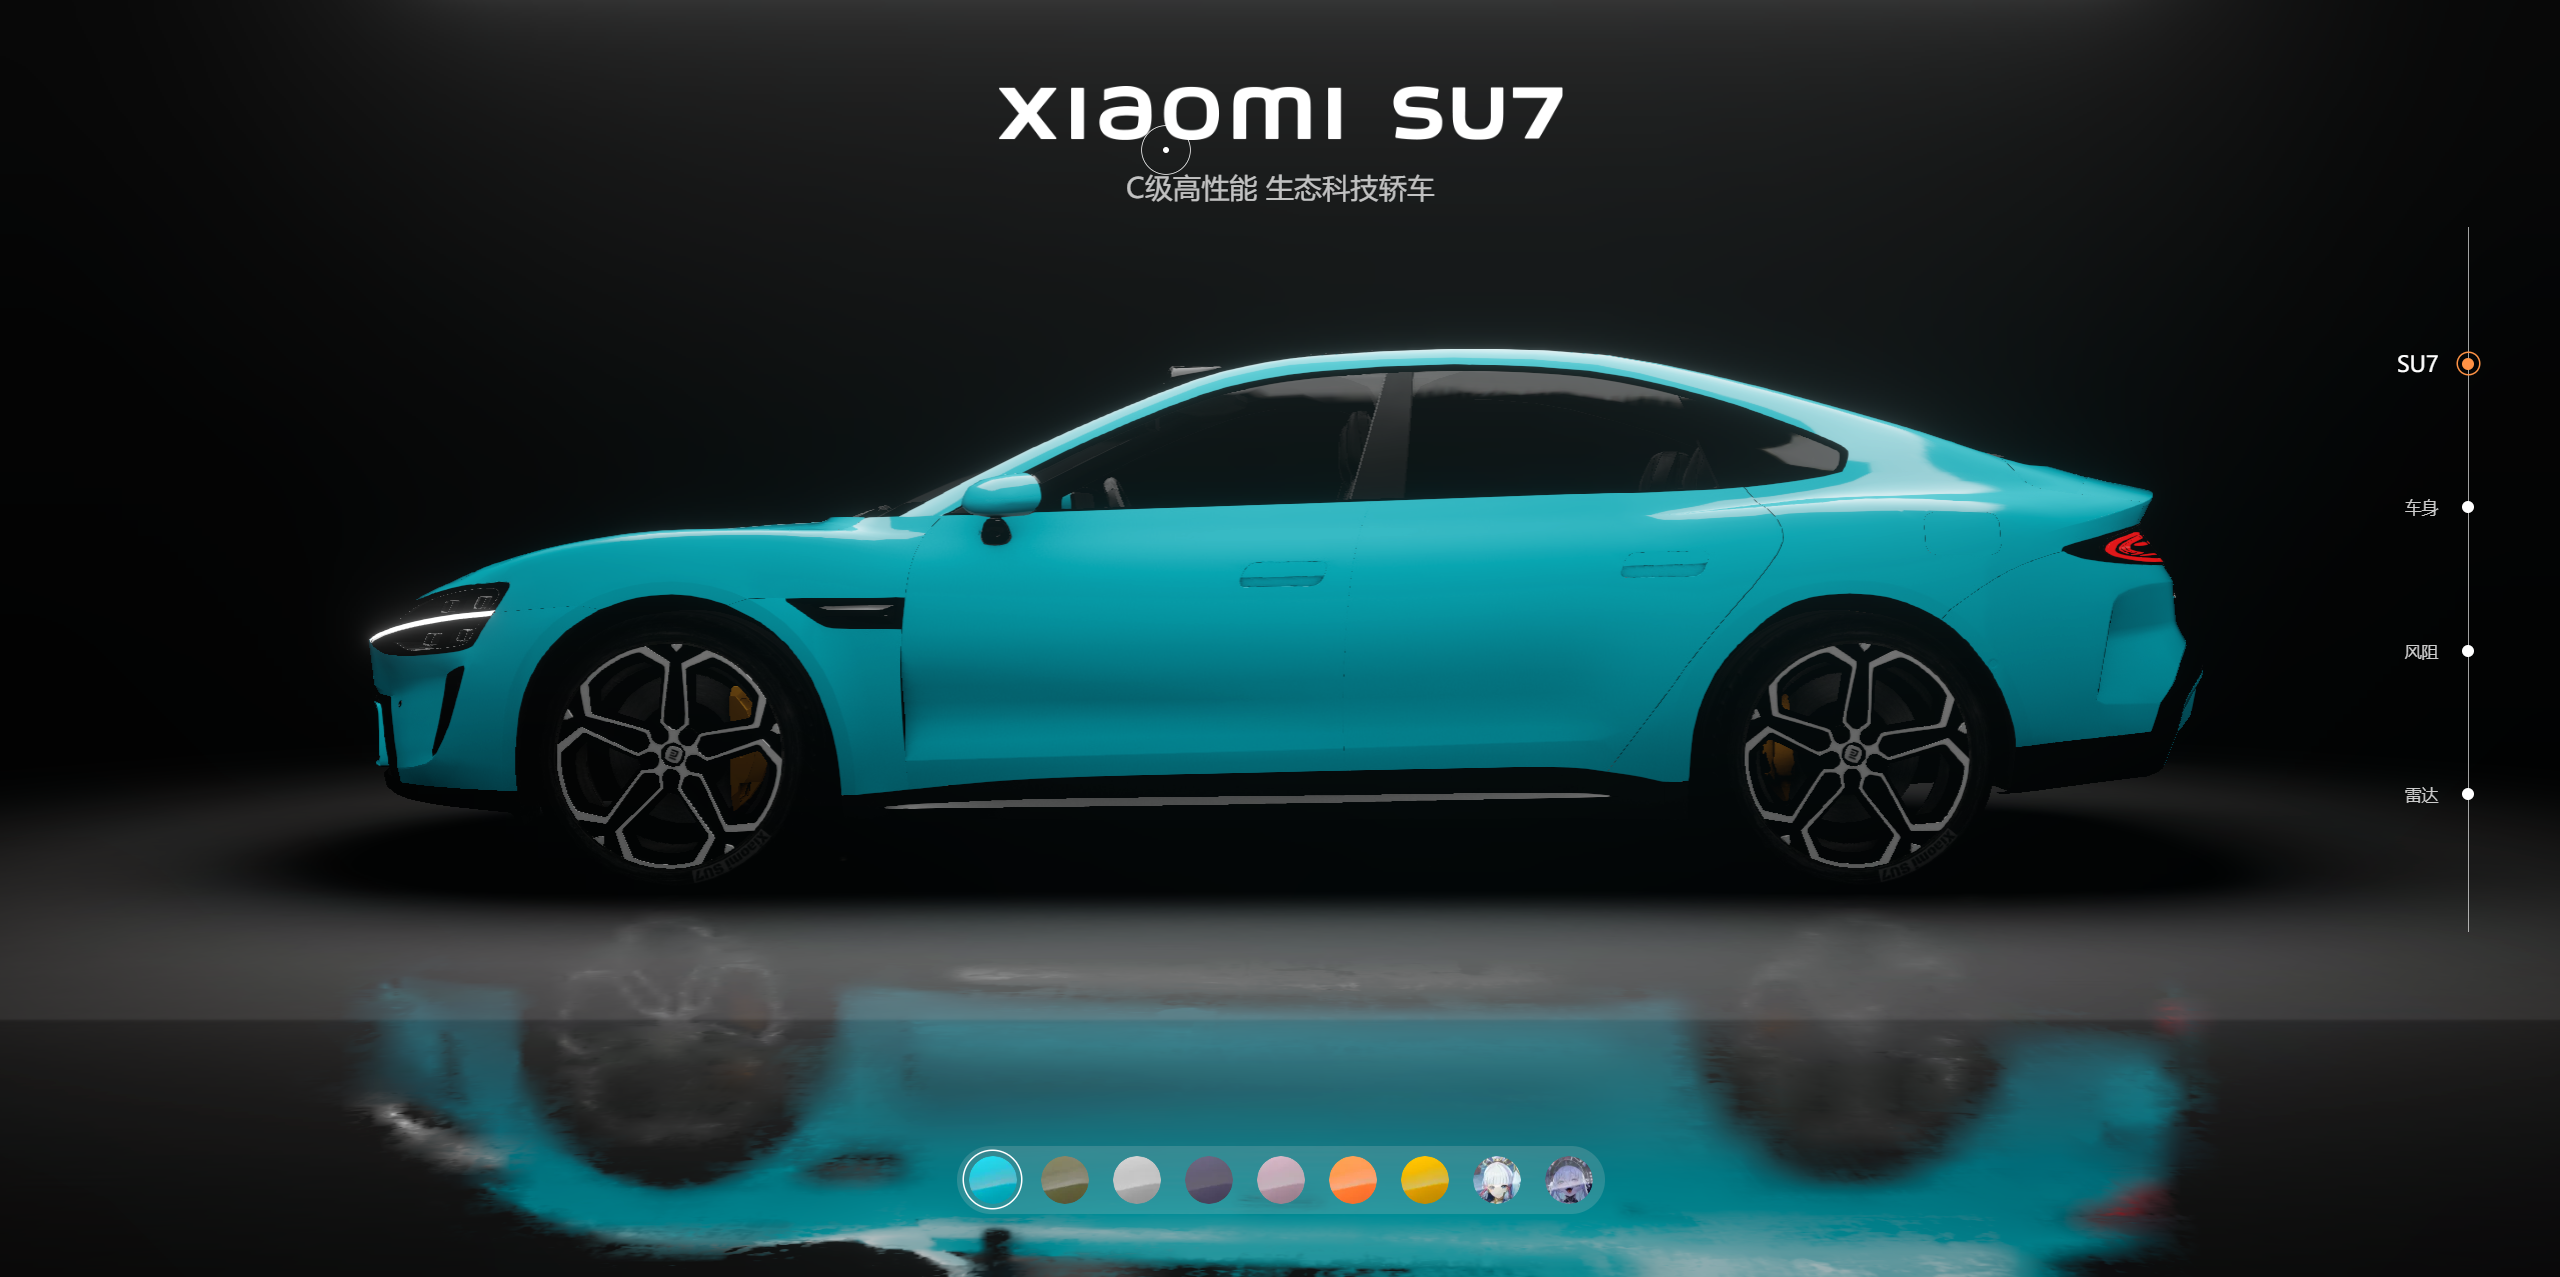 非常好看的响应式小米汽车su7全色系展示html源码